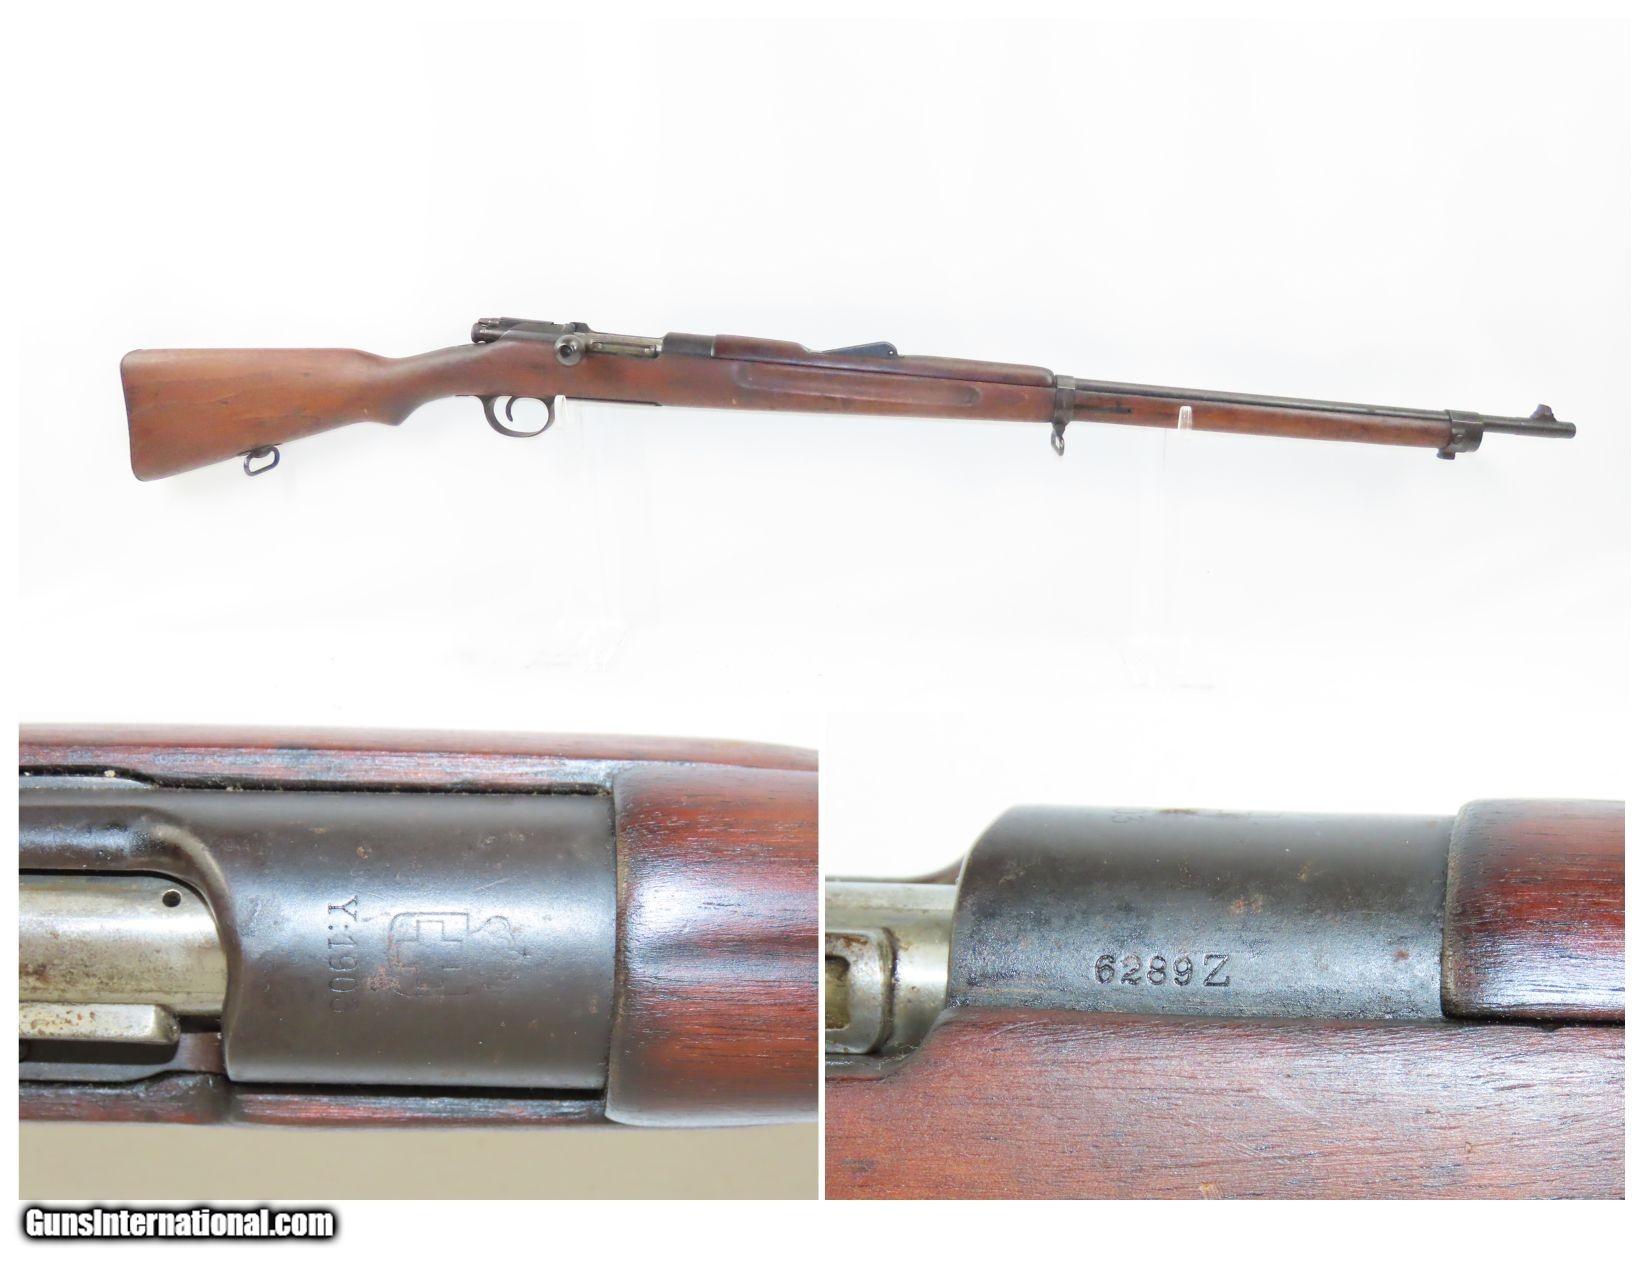 1907 GREEK Contract STEYR Mannlicher-Schoenauer Model 1903 6.5 mm Rifle ...